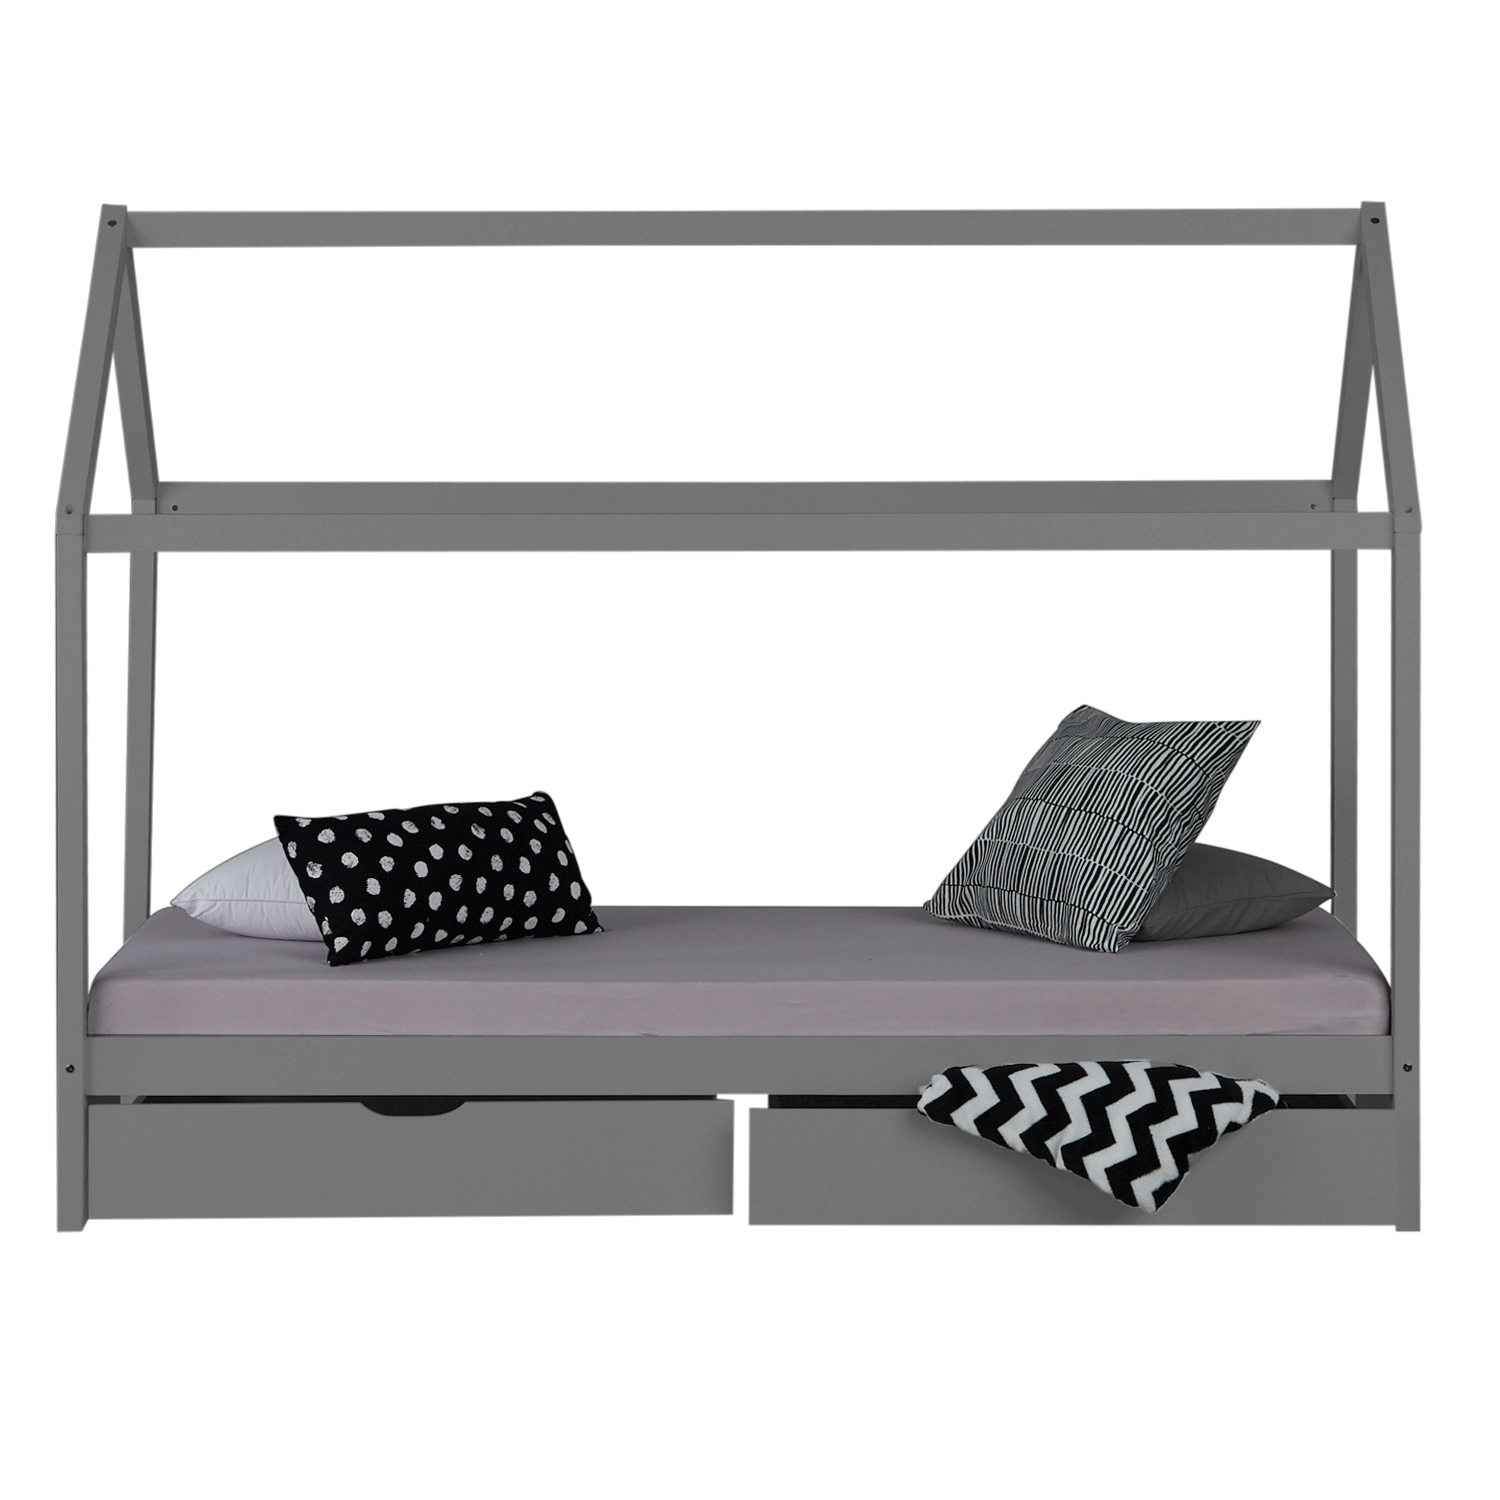 Kinderbett Kinderhaus Spielbett Hausbett 90x200 cm Grau mit Bettkasten